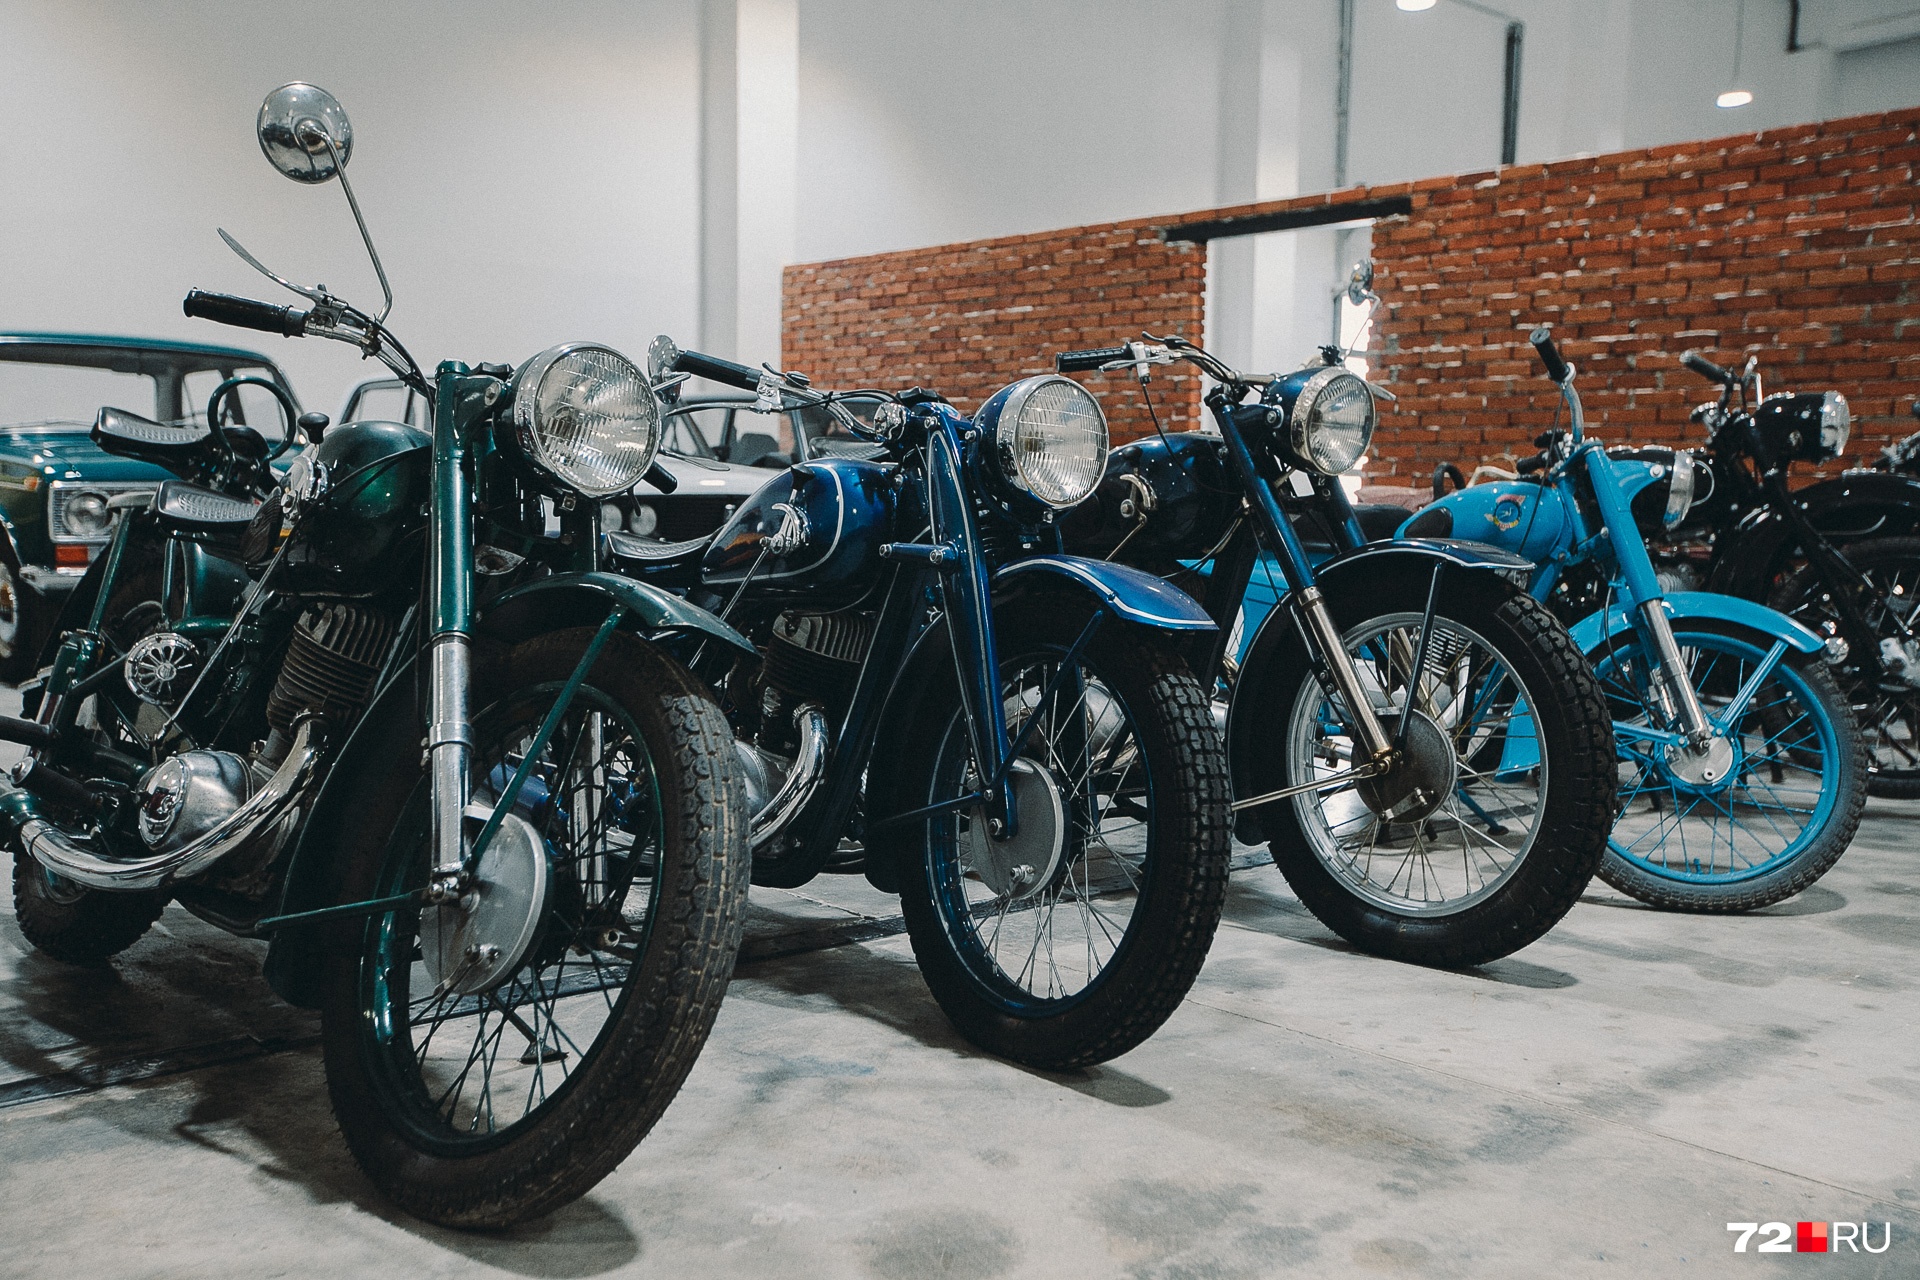 В музее можно увидеть с десяток самых разных мотоциклов